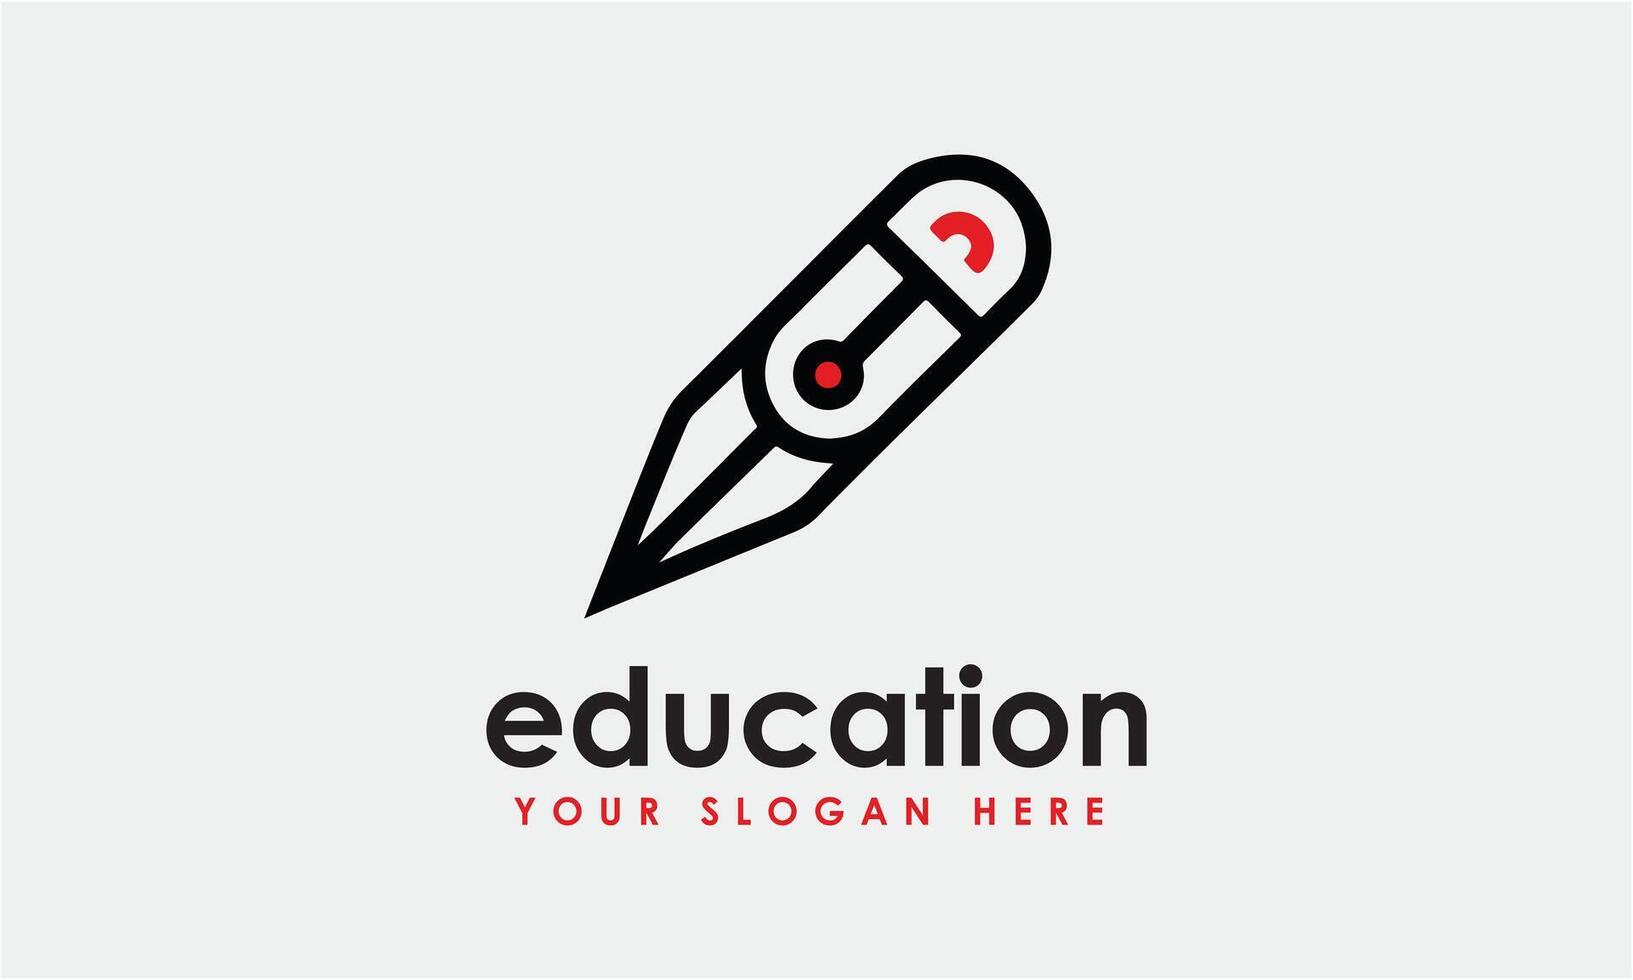 AI generated Pen pencil symbol icon logo design vector minimalist template